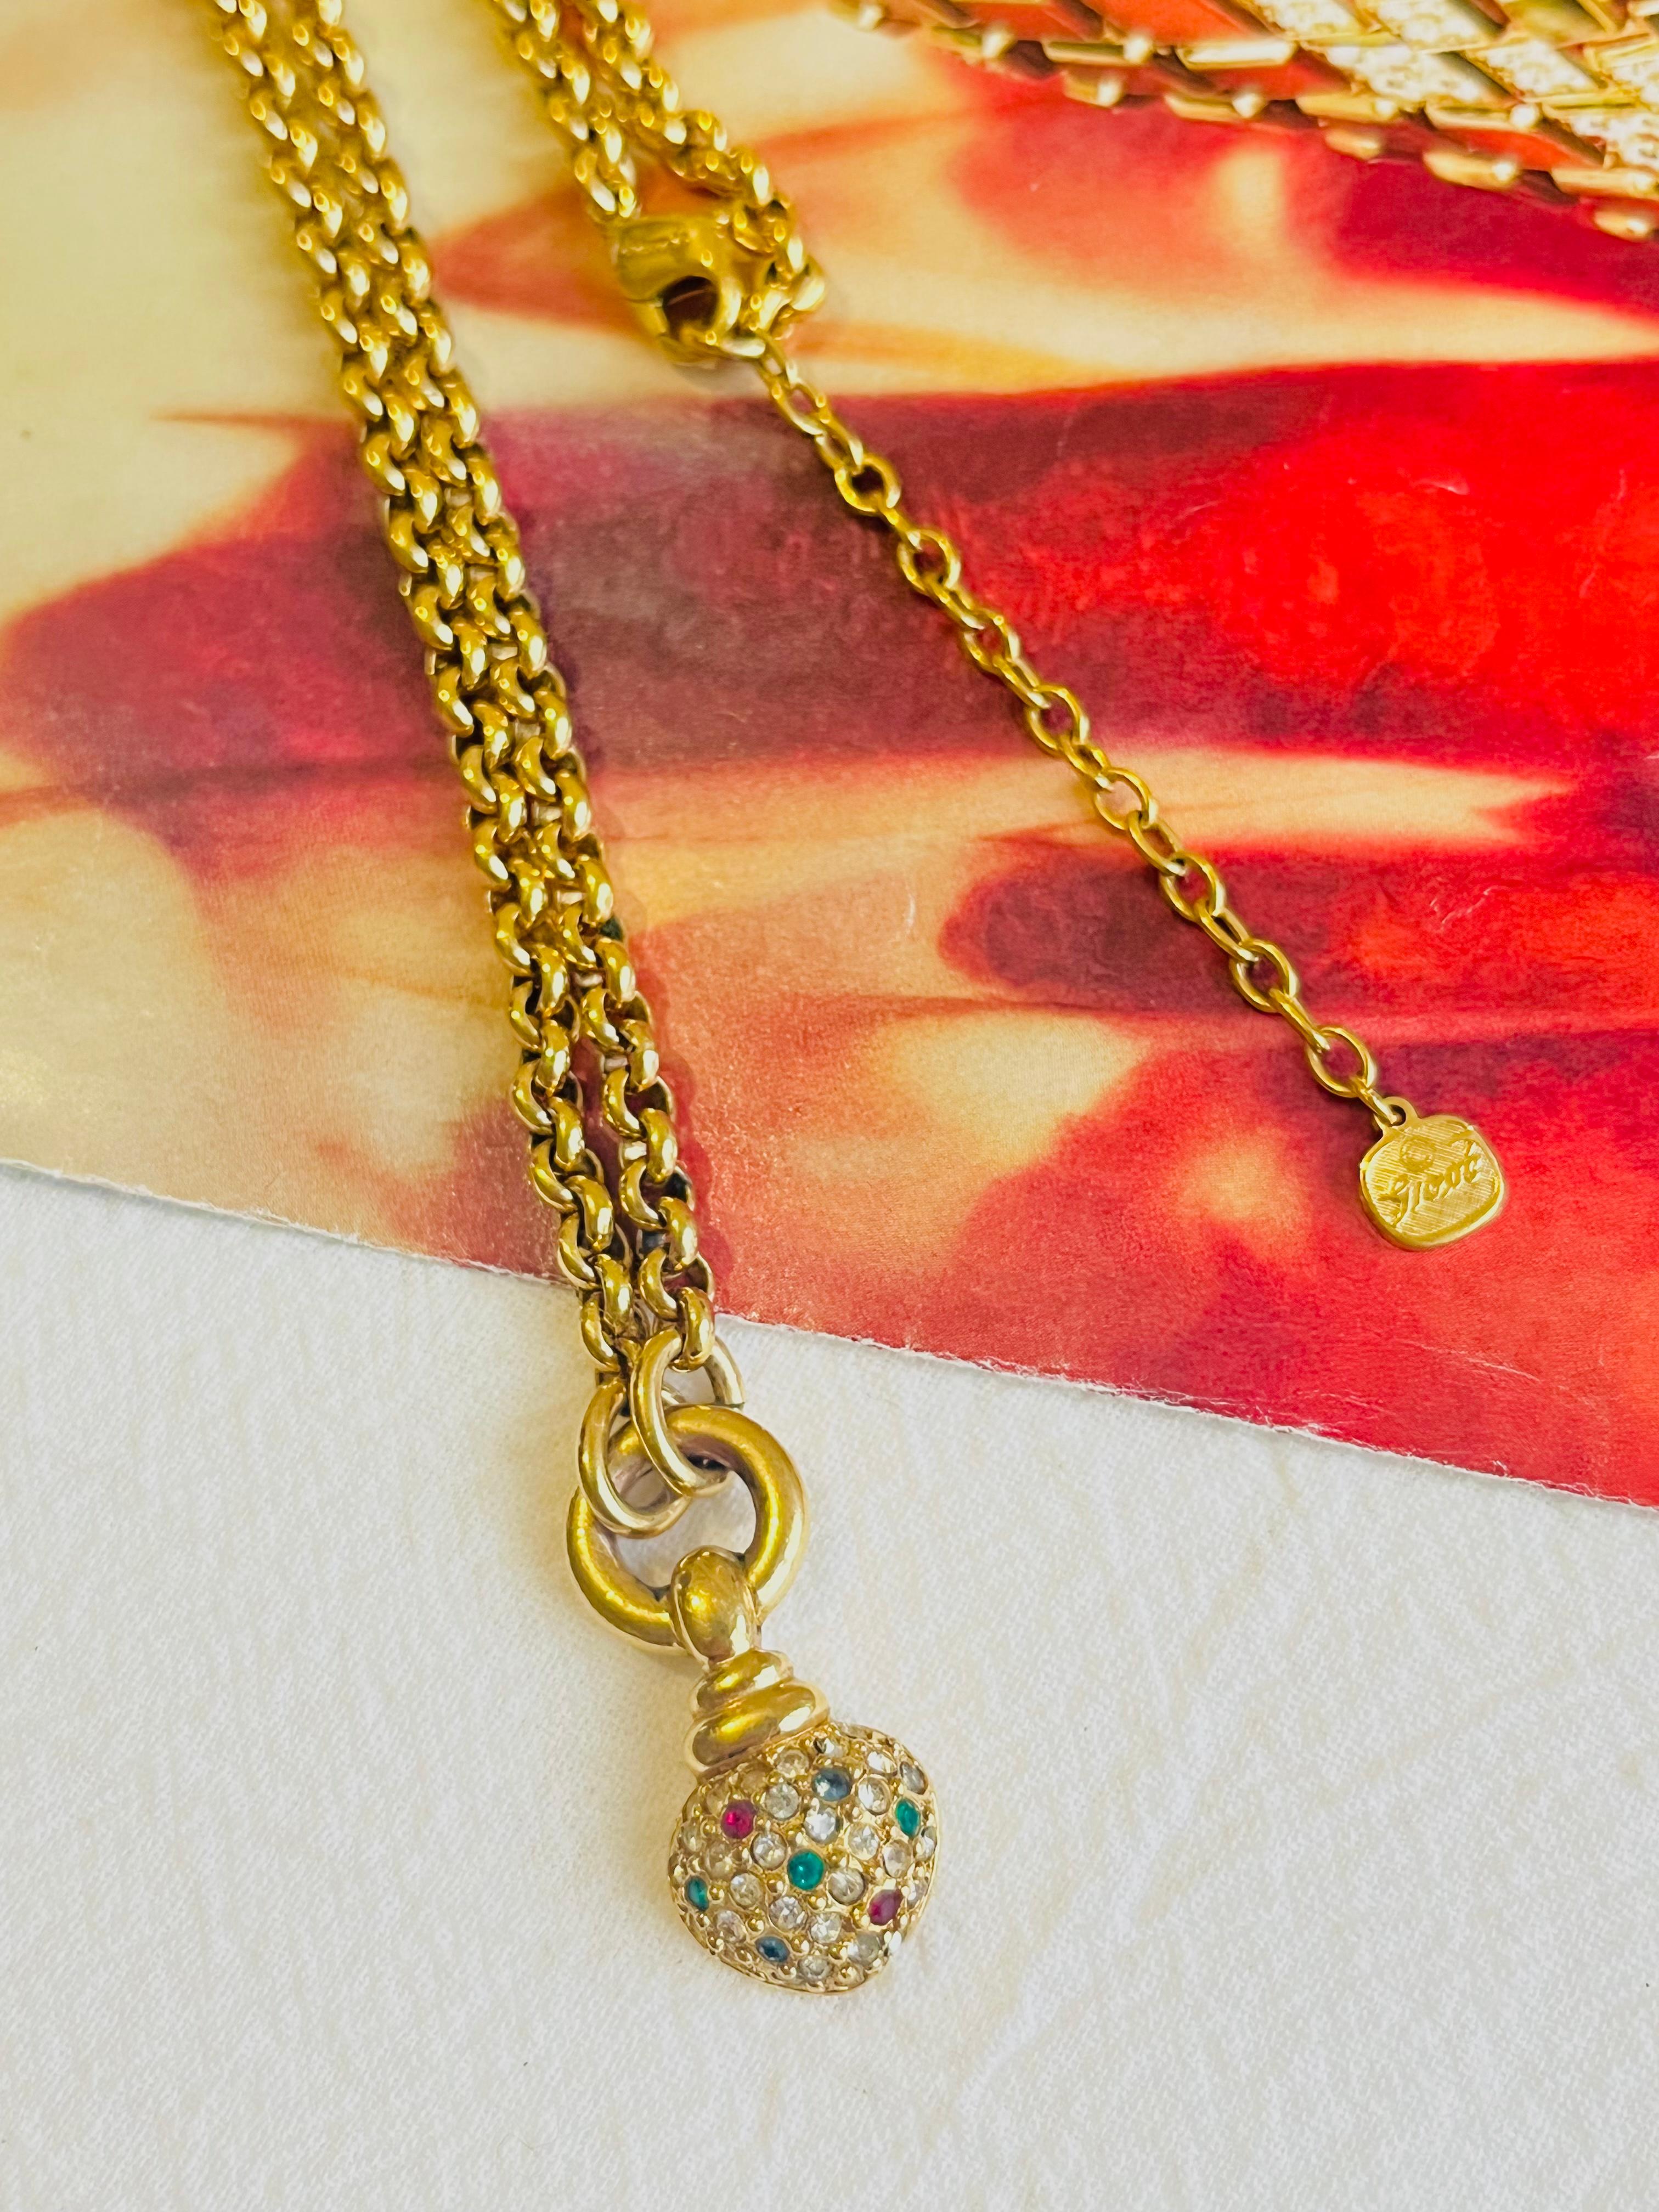 dior heart necklace vintage